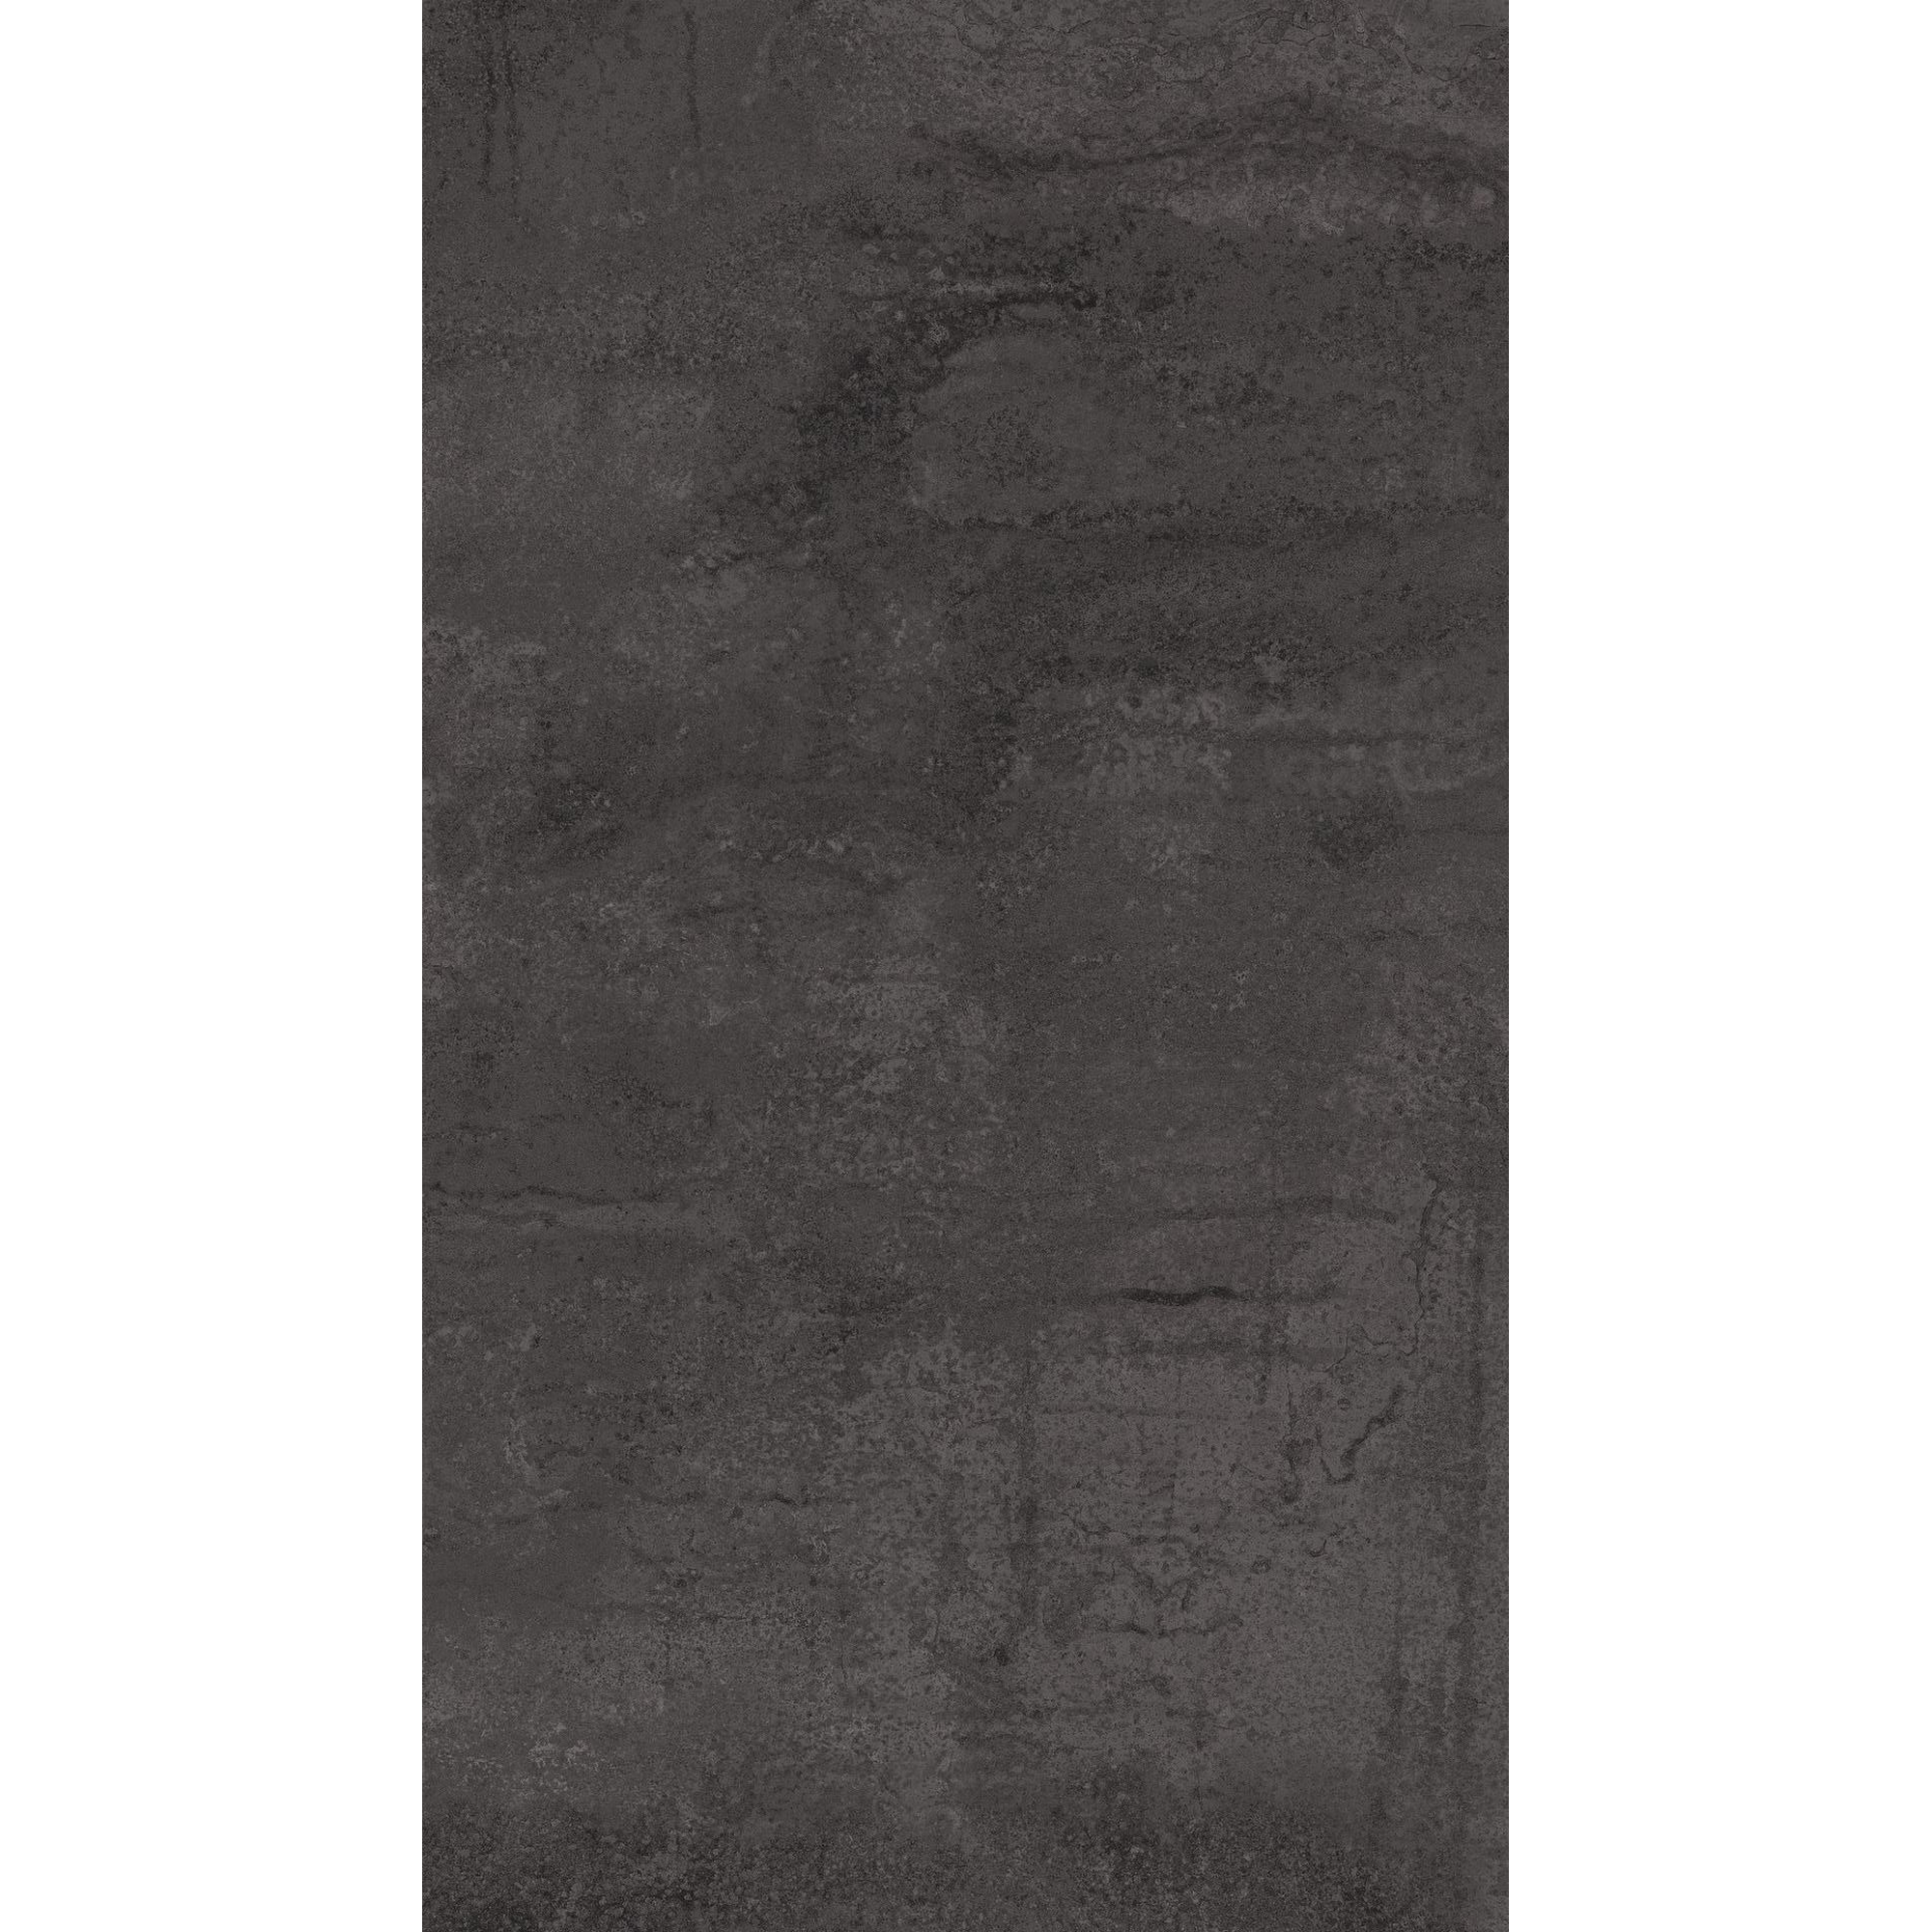 Küchenrückwand 'K4399/K4890' Rusty Iron Ocean grau/Arabescato weiß, beidseitiges Dekor 4100 x 640 x 15 mm + product picture